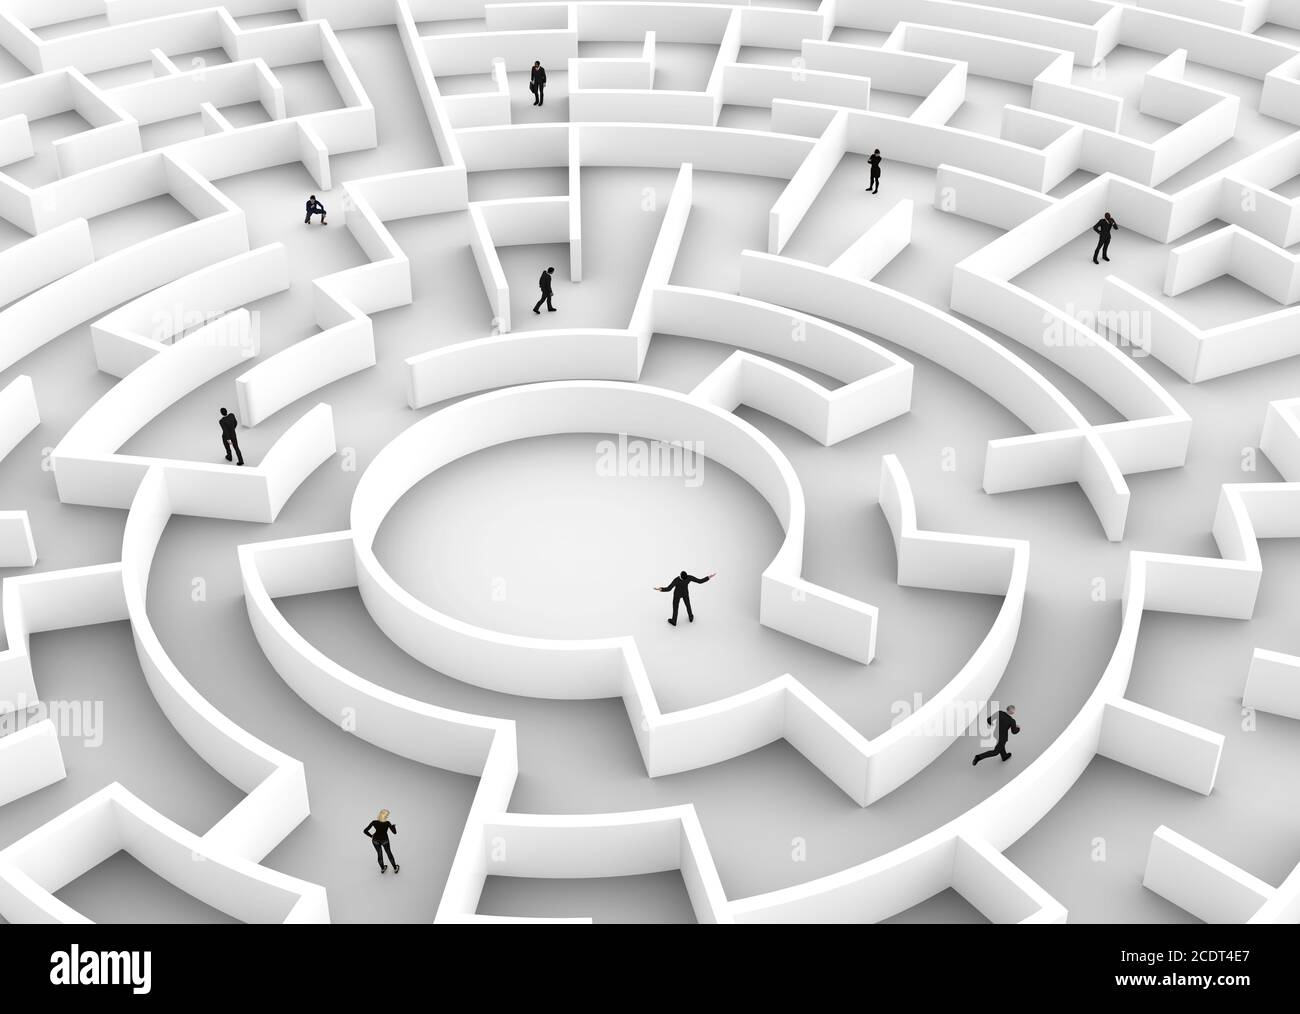 La concurrence des gens d'affaires - trouver une solution du labyrinthe., un gagnant. Banque D'Images